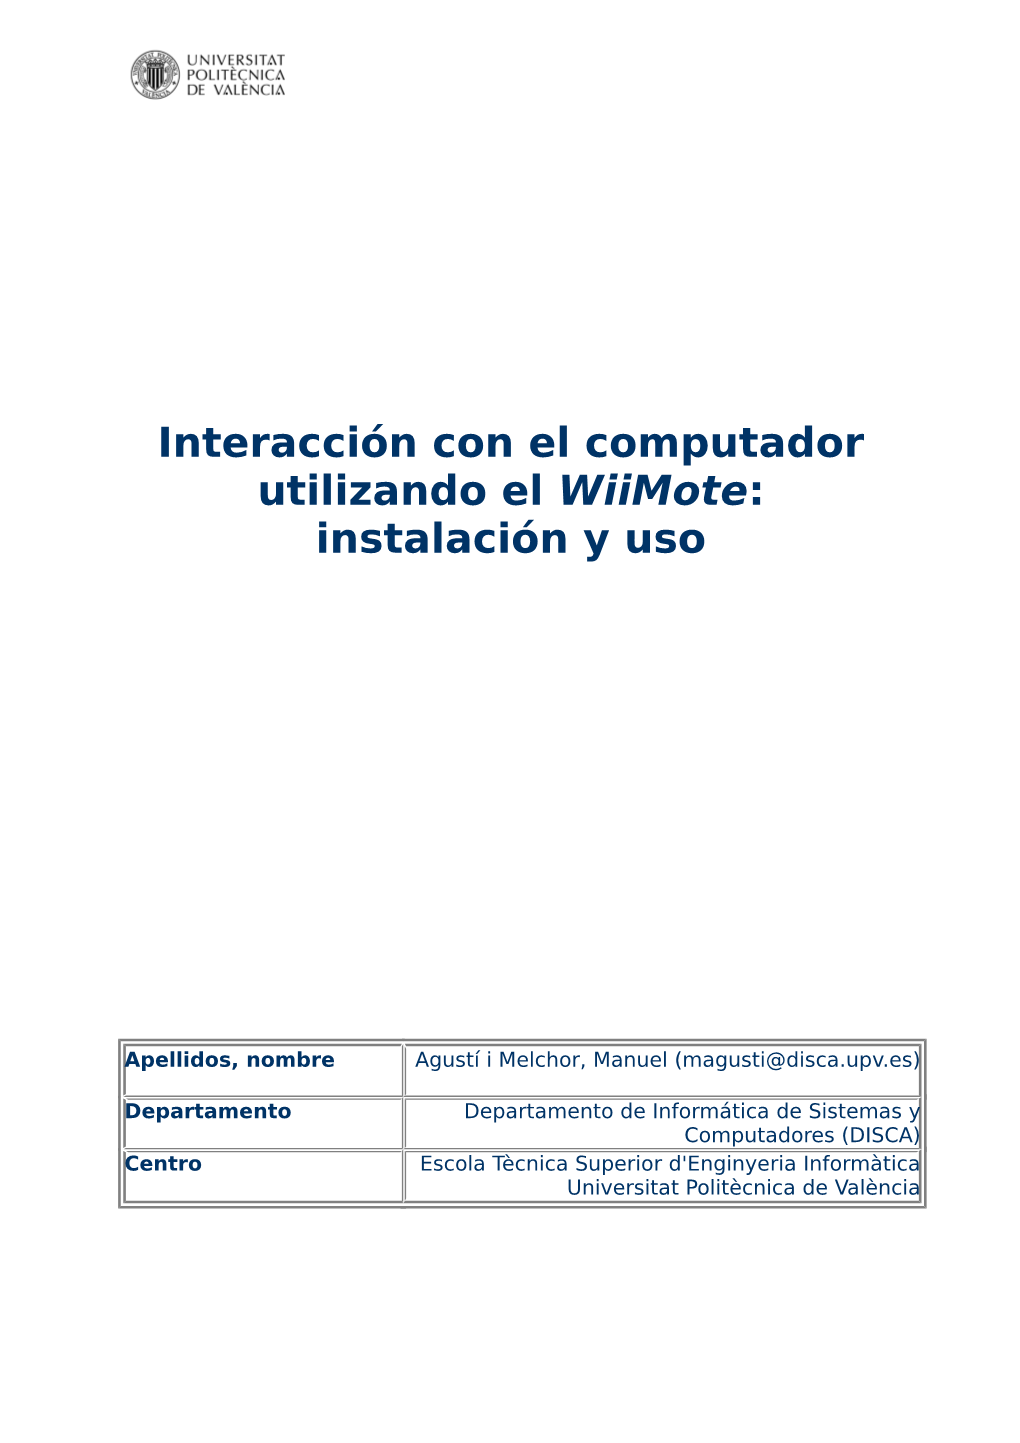 Interacción Con El Computador Utilizando El Wiimote: Instalación Y Uso